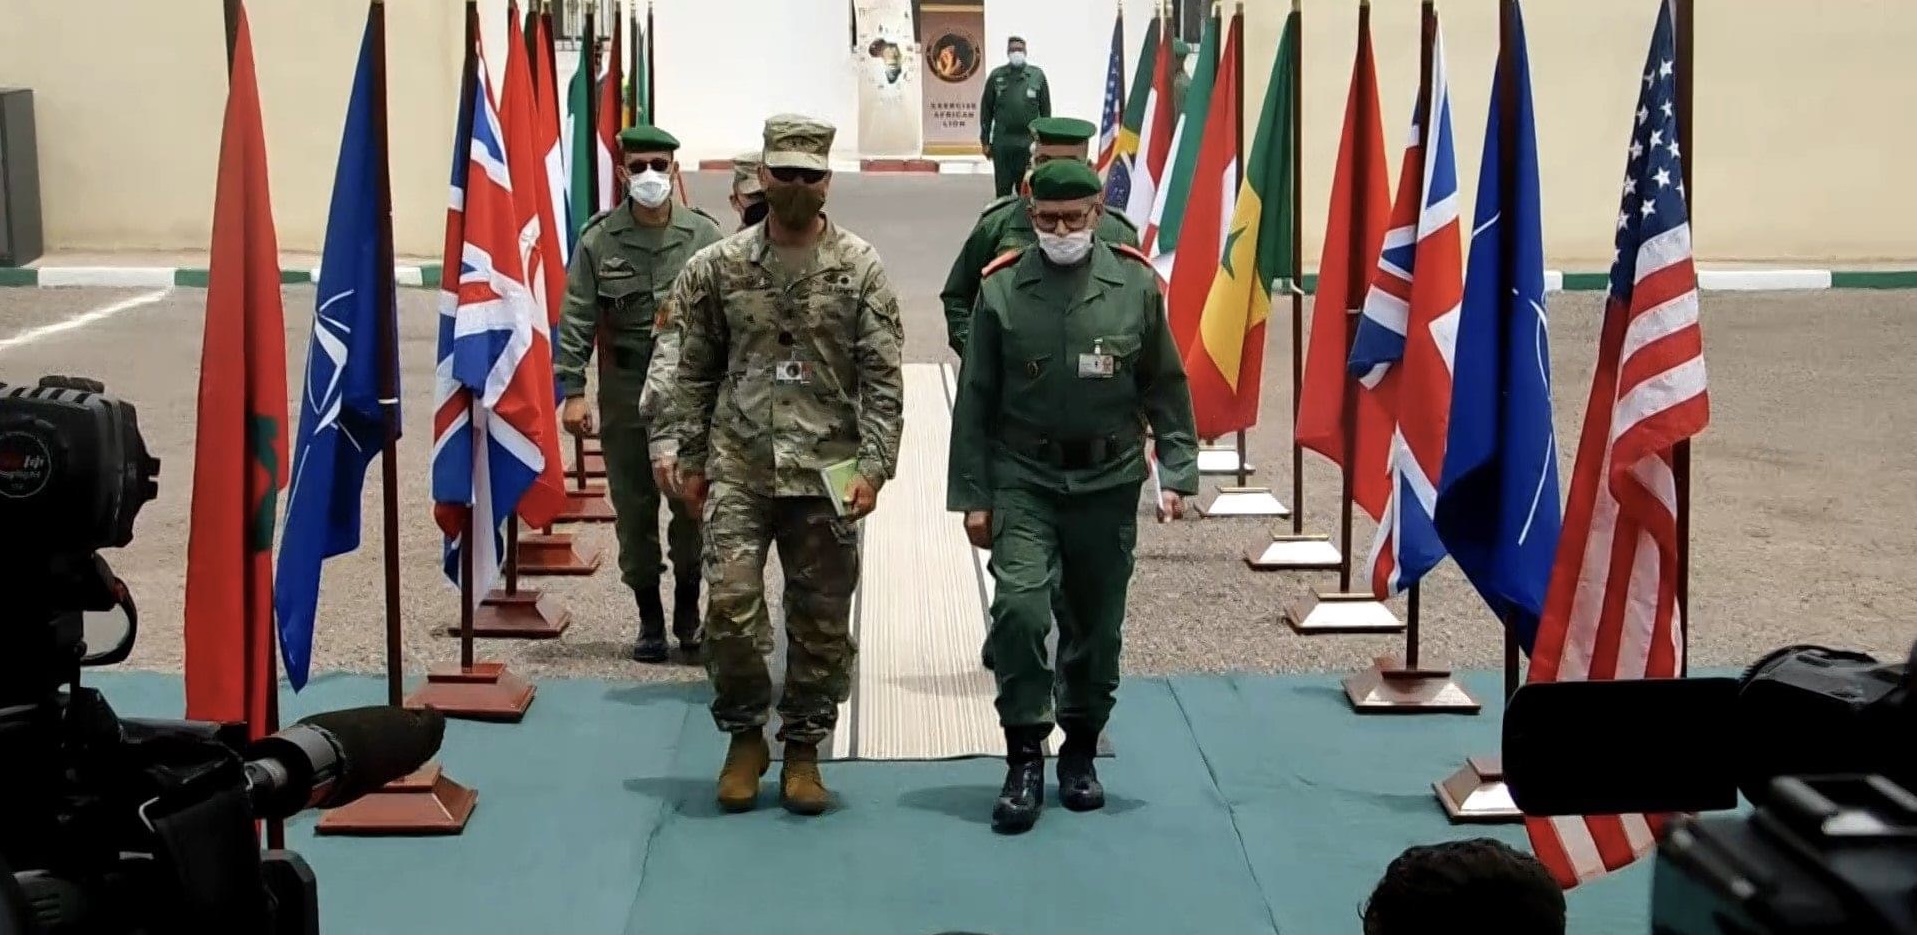 رسميا.. المغرب ينضم إلى القيادة العسكرية الأمريكية "سينتكوم"